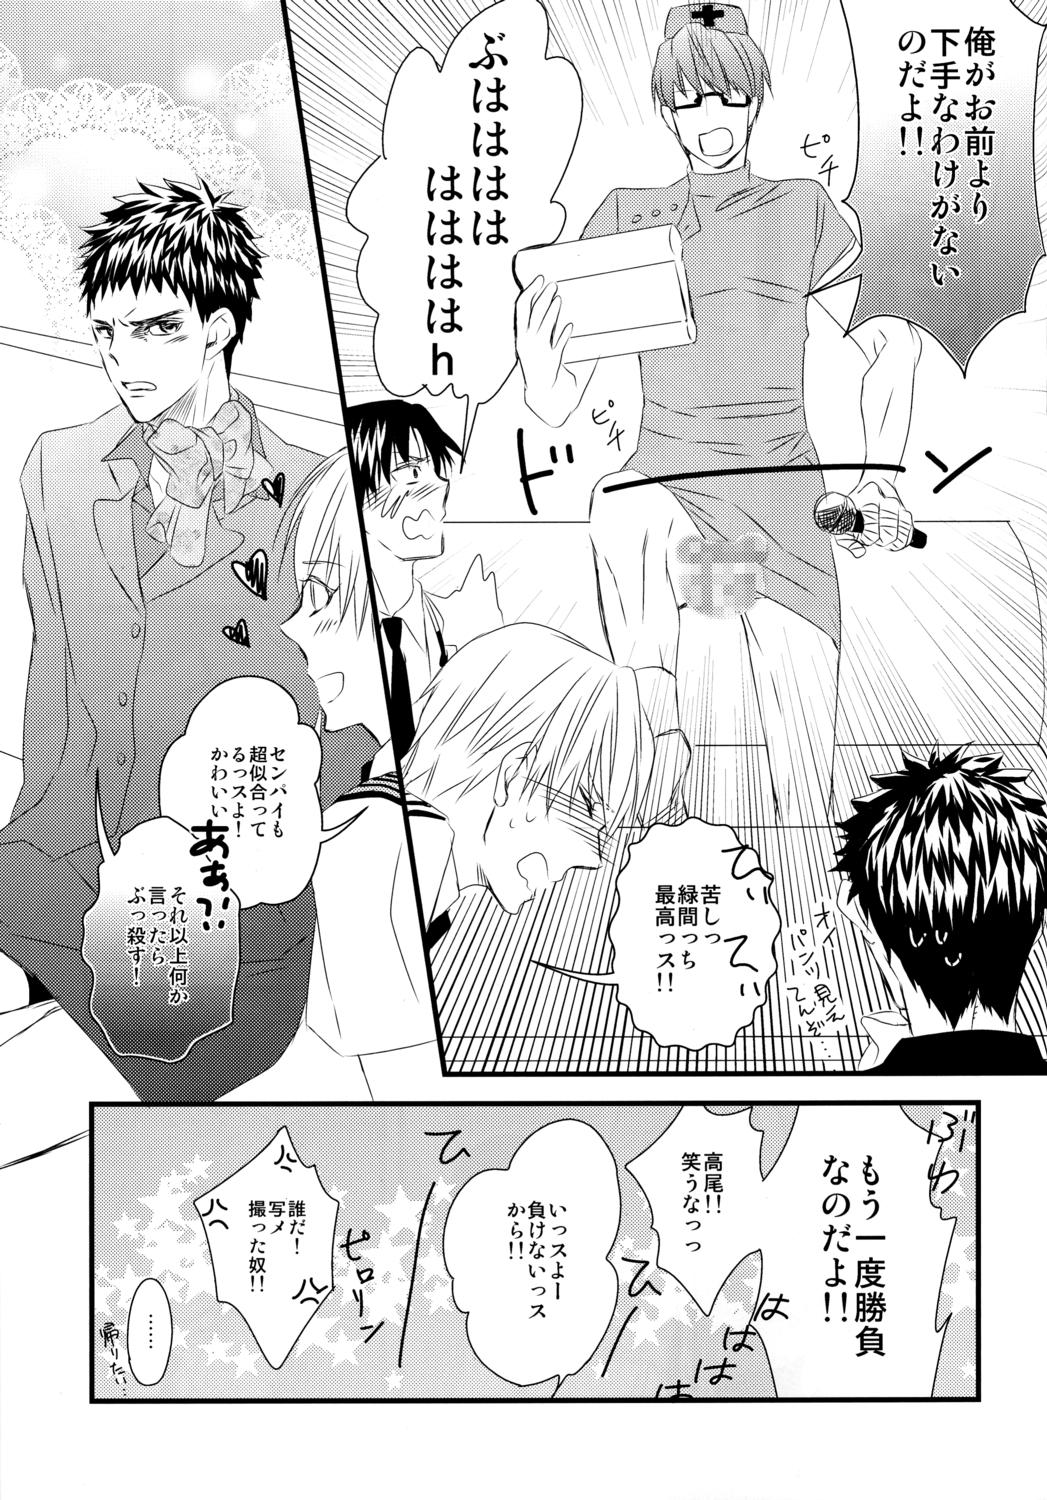 No Condom Karaoke Date - Kuroko no basuke Highschool - Page 10